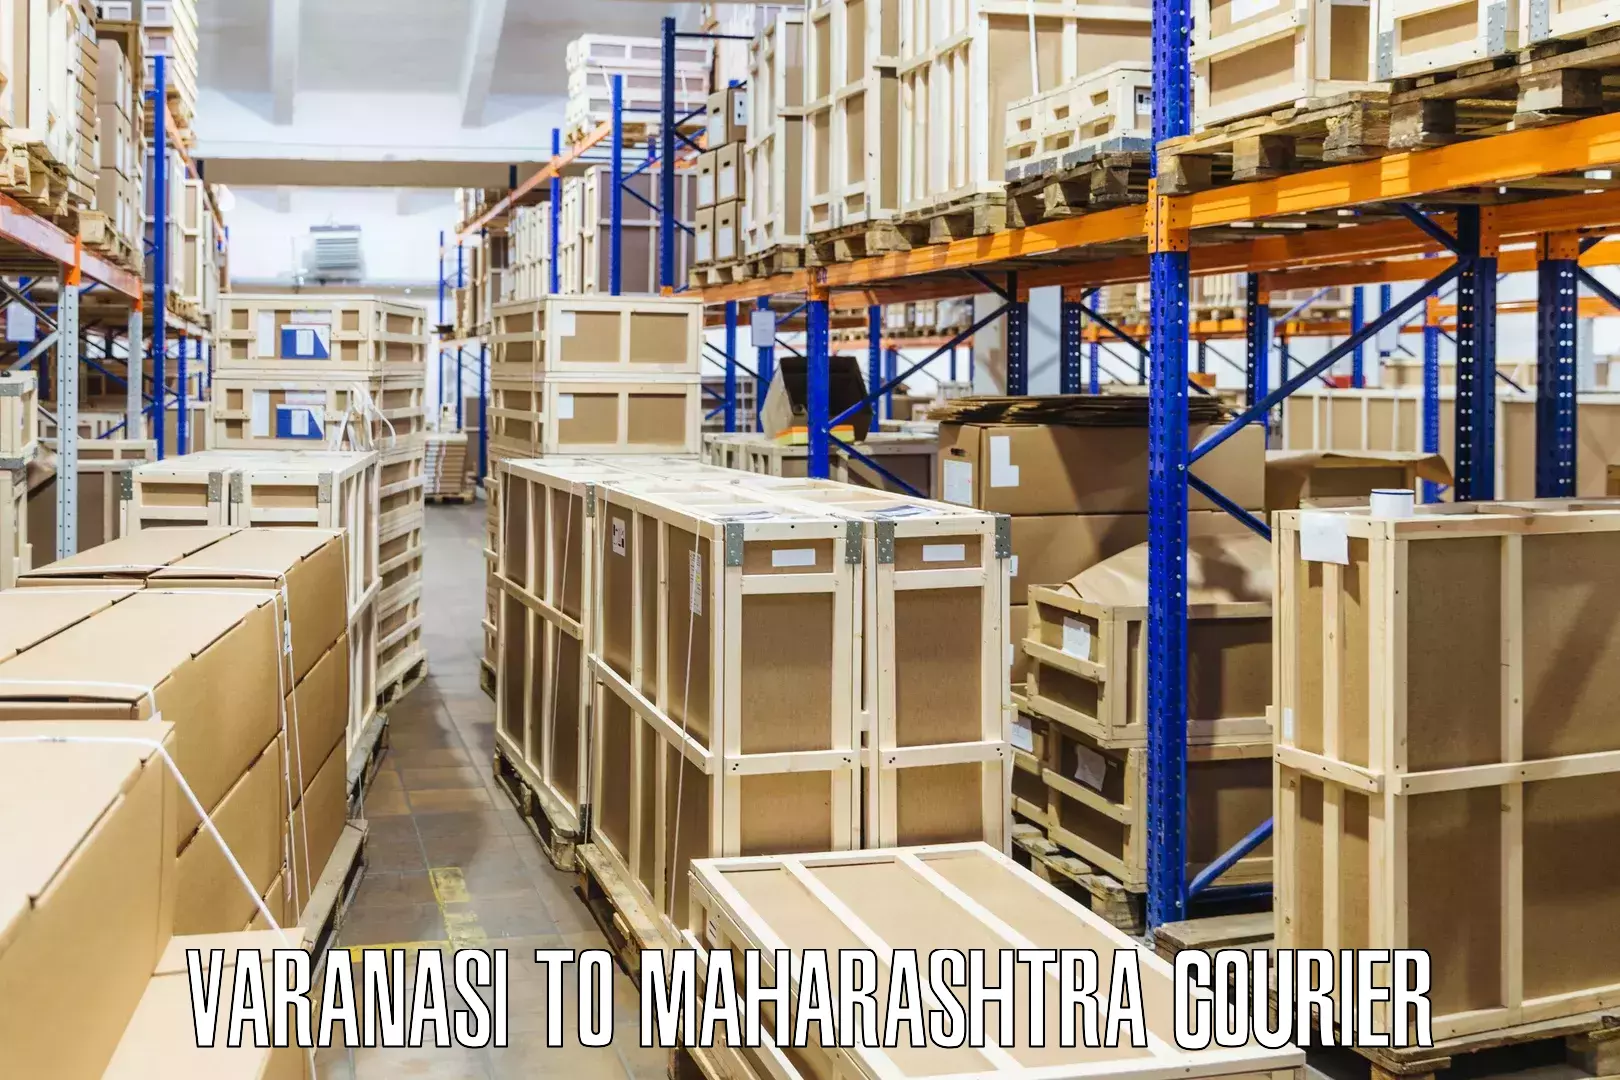 High-performance logistics in Varanasi to Maharashtra